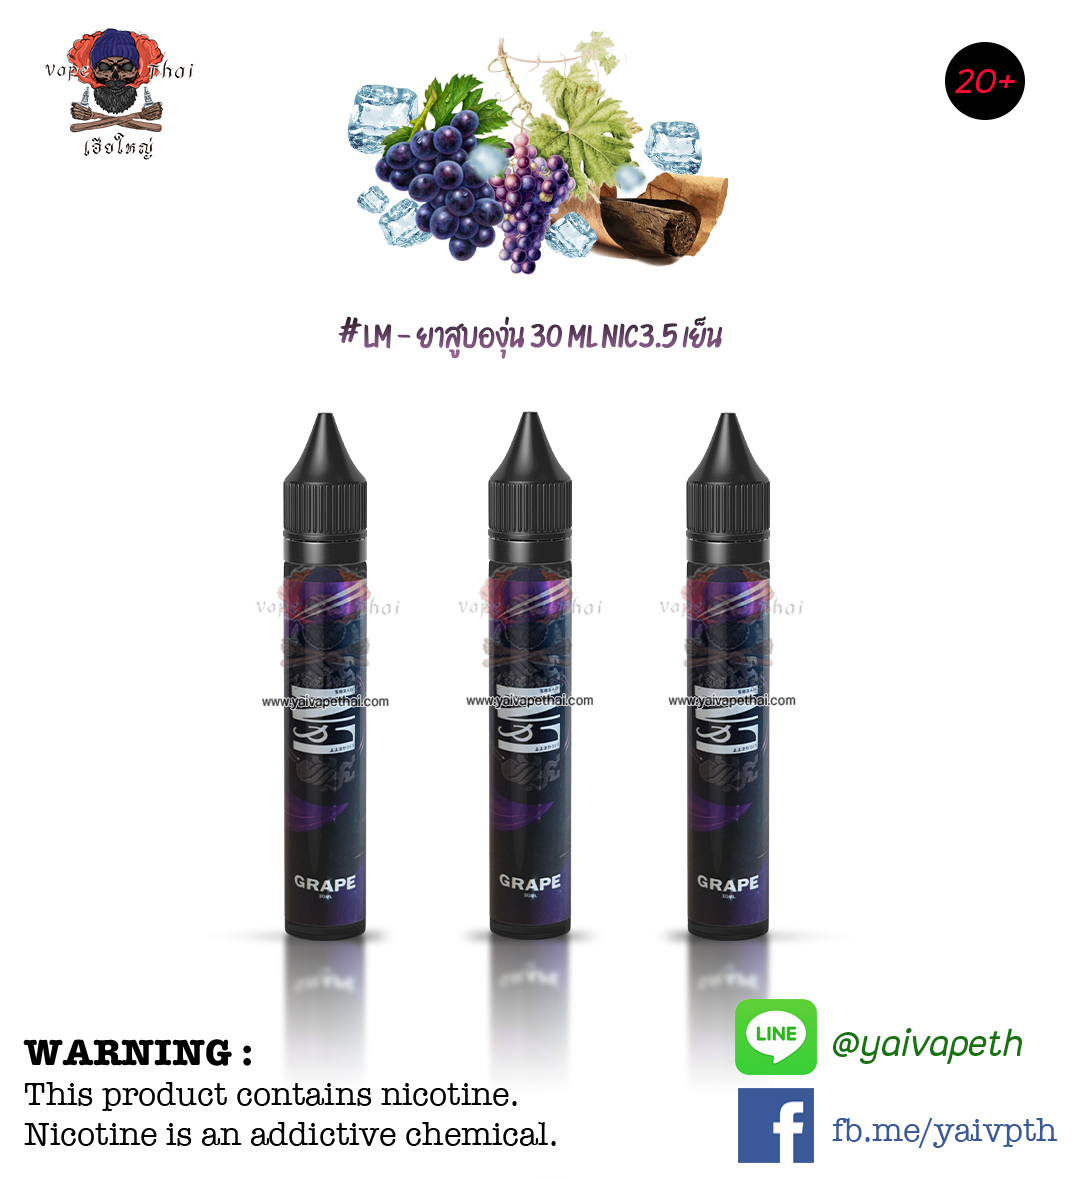 แอลเอ็มองุ่น – น้ำยาบุหรี่ไฟฟ้า LM Grape 30 ml (ขวดดำ) [เย็น] ของแท้